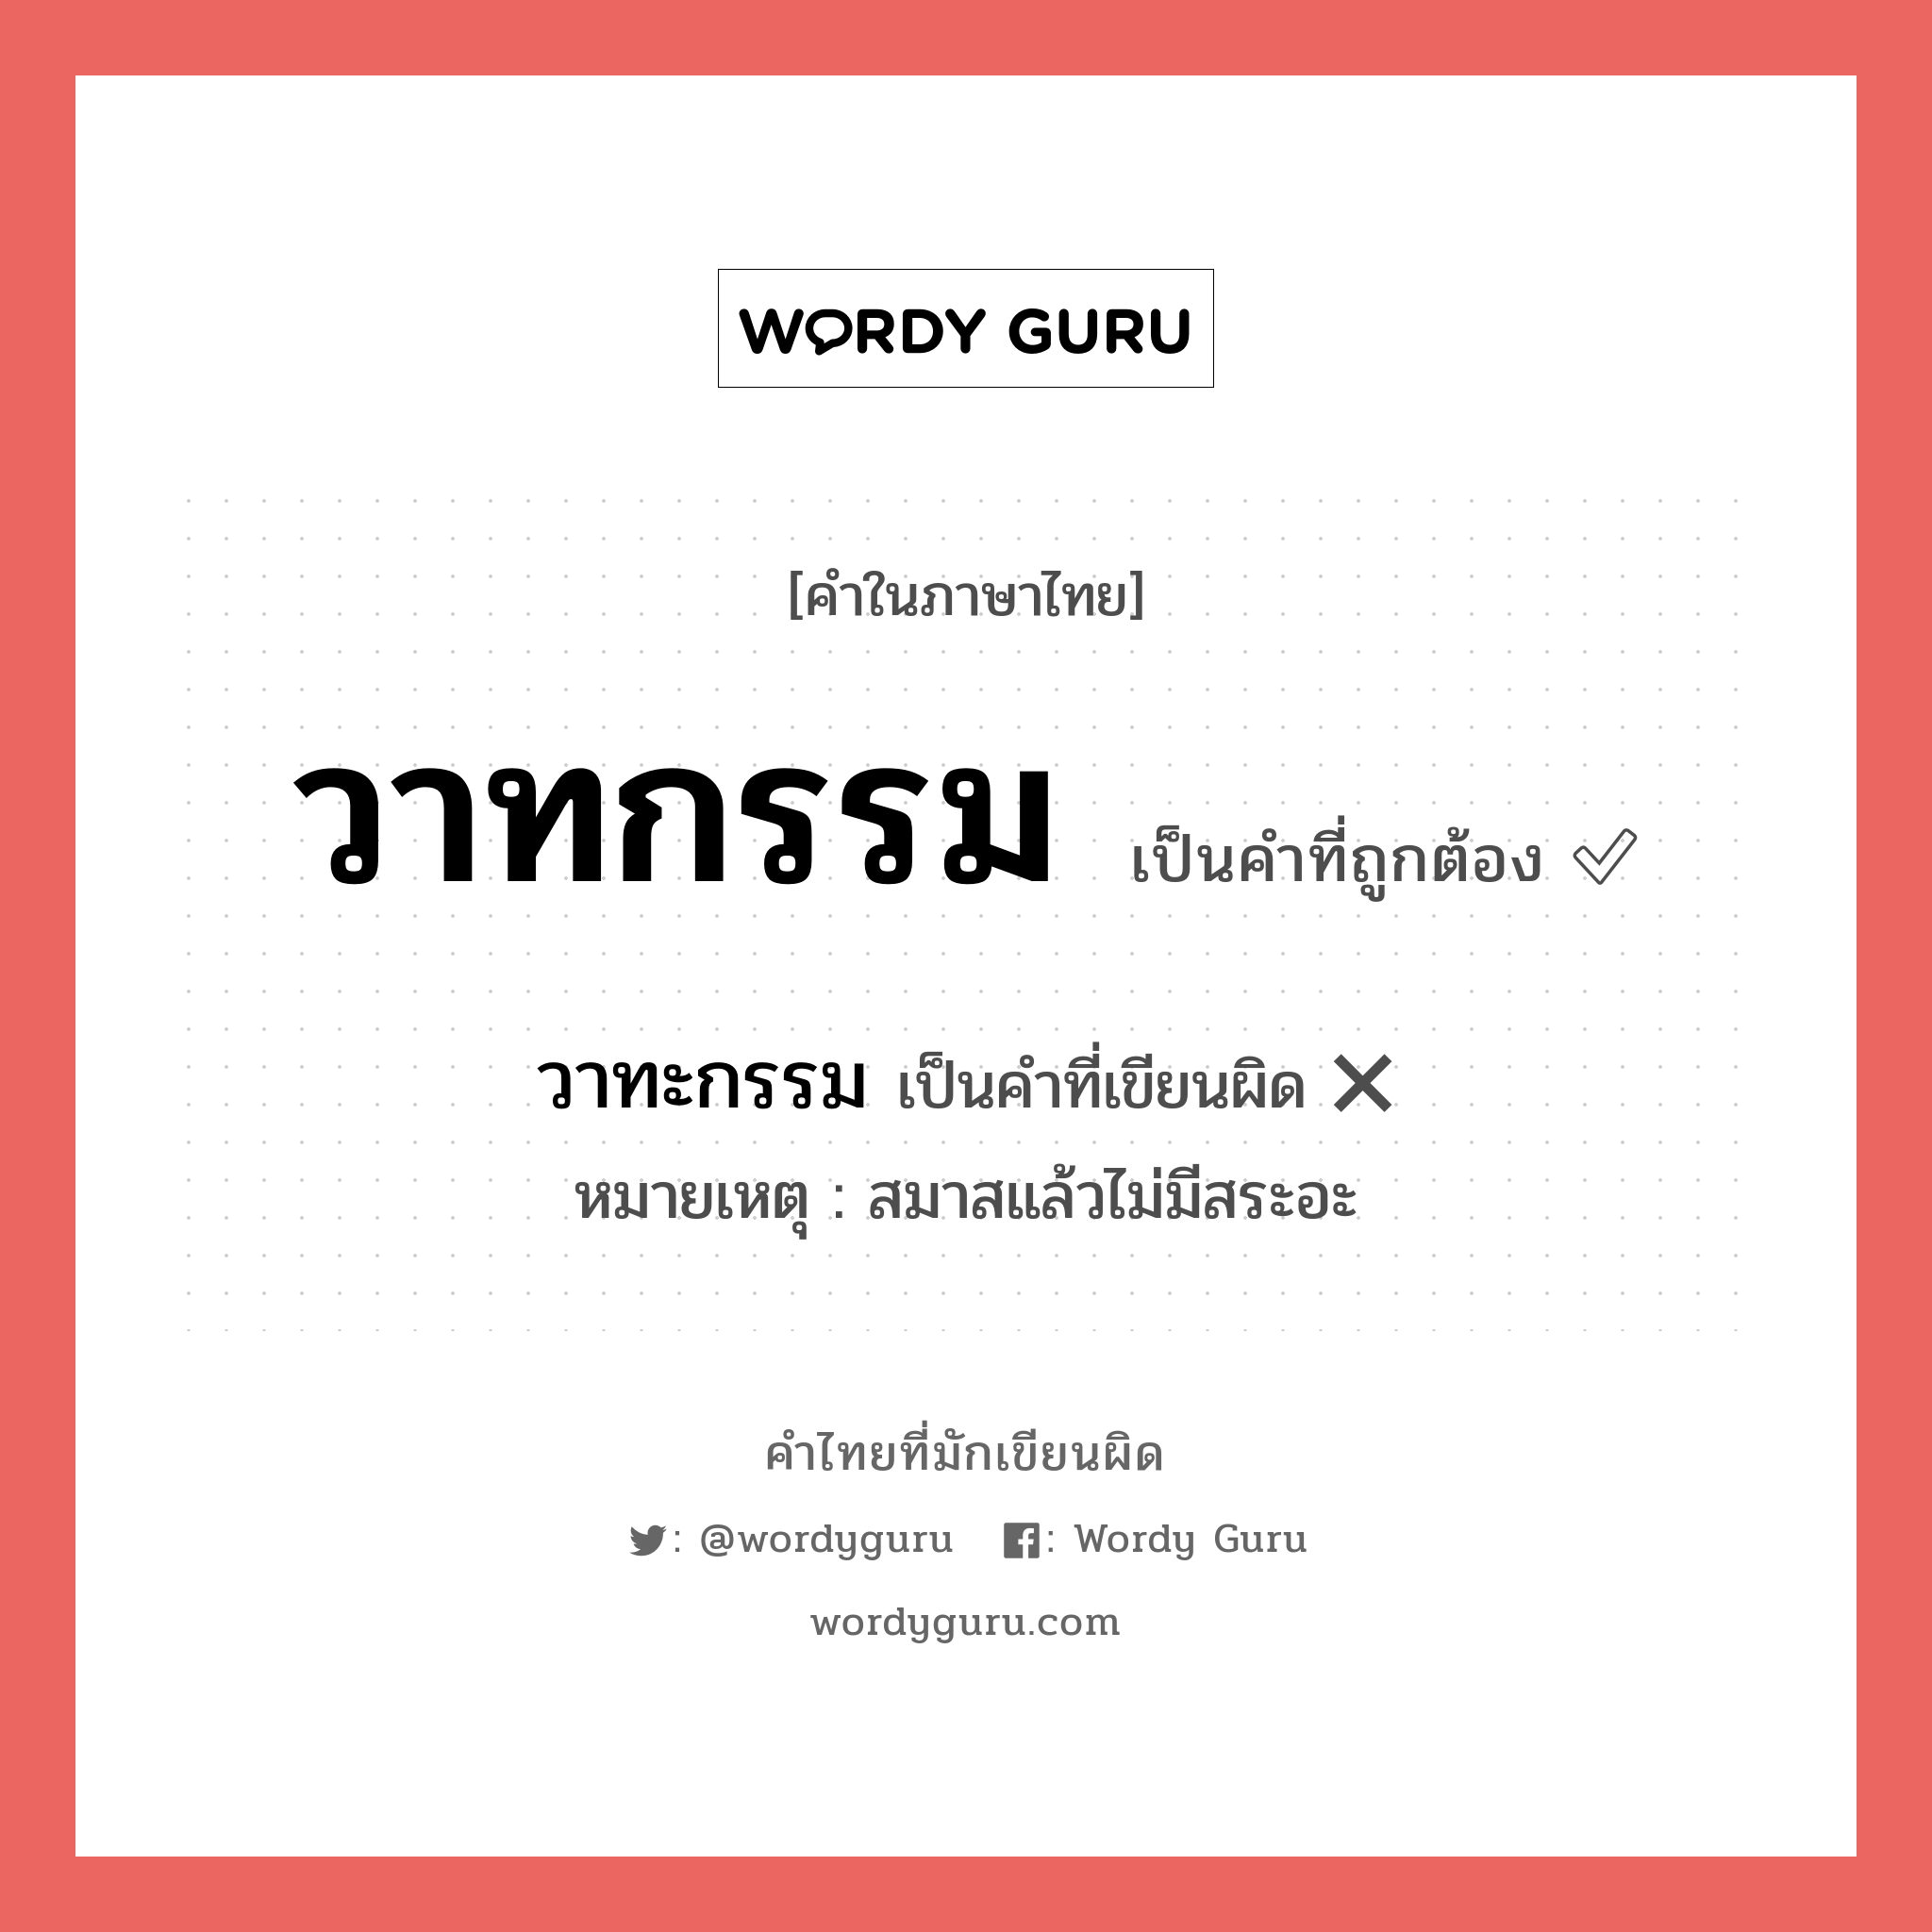 วาทกรรม หรือ วาทะกรรม เขียนยังไง? คำไหนเขียนถูก?, คำในภาษาไทยที่มักเขียนผิด วาทกรรม คำที่ผิด ❌ วาทะกรรม หมายเหตุ สมาสแล้วไม่มีสระอะ